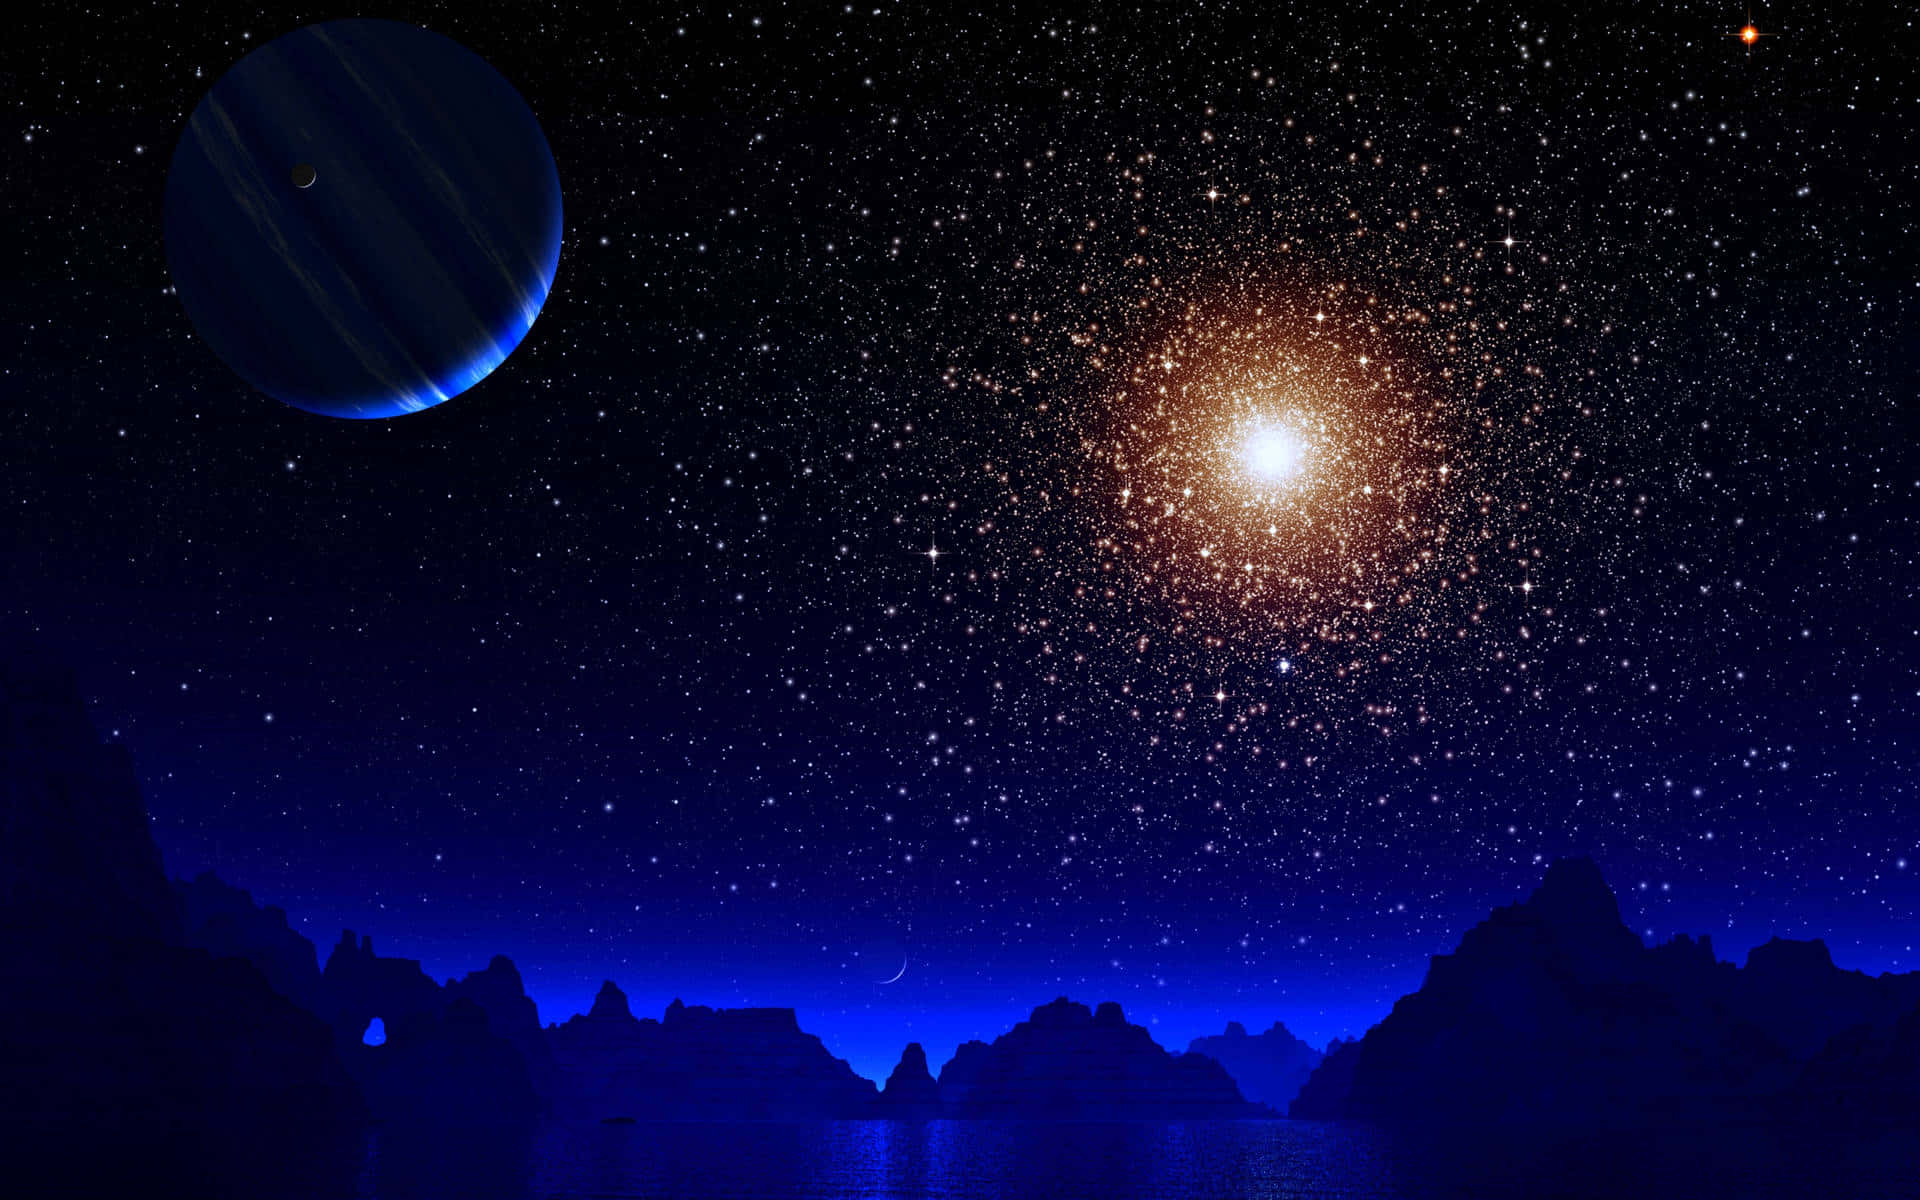 Unavista Impresionante De Un Cielo Nocturno Iluminado Por Estrellas.